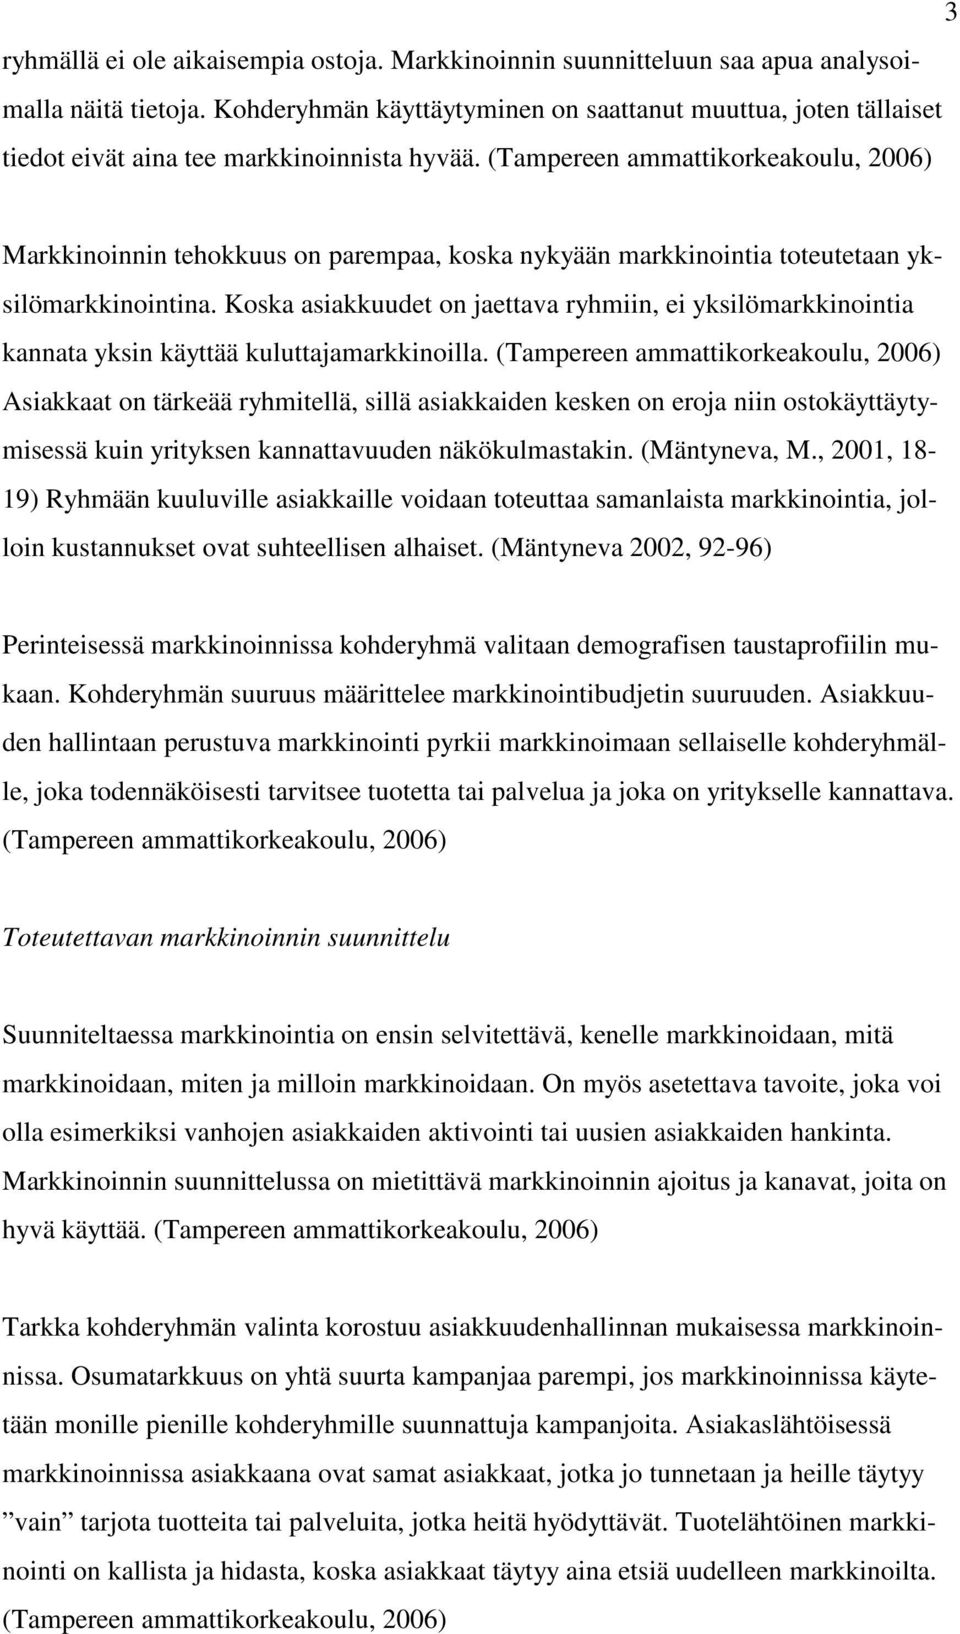 (Tampereen ammattikorkeakoulu, 2006) Markkinoinnin tehokkuus on parempaa, koska nykyään markkinointia toteutetaan yksilömarkkinointina.